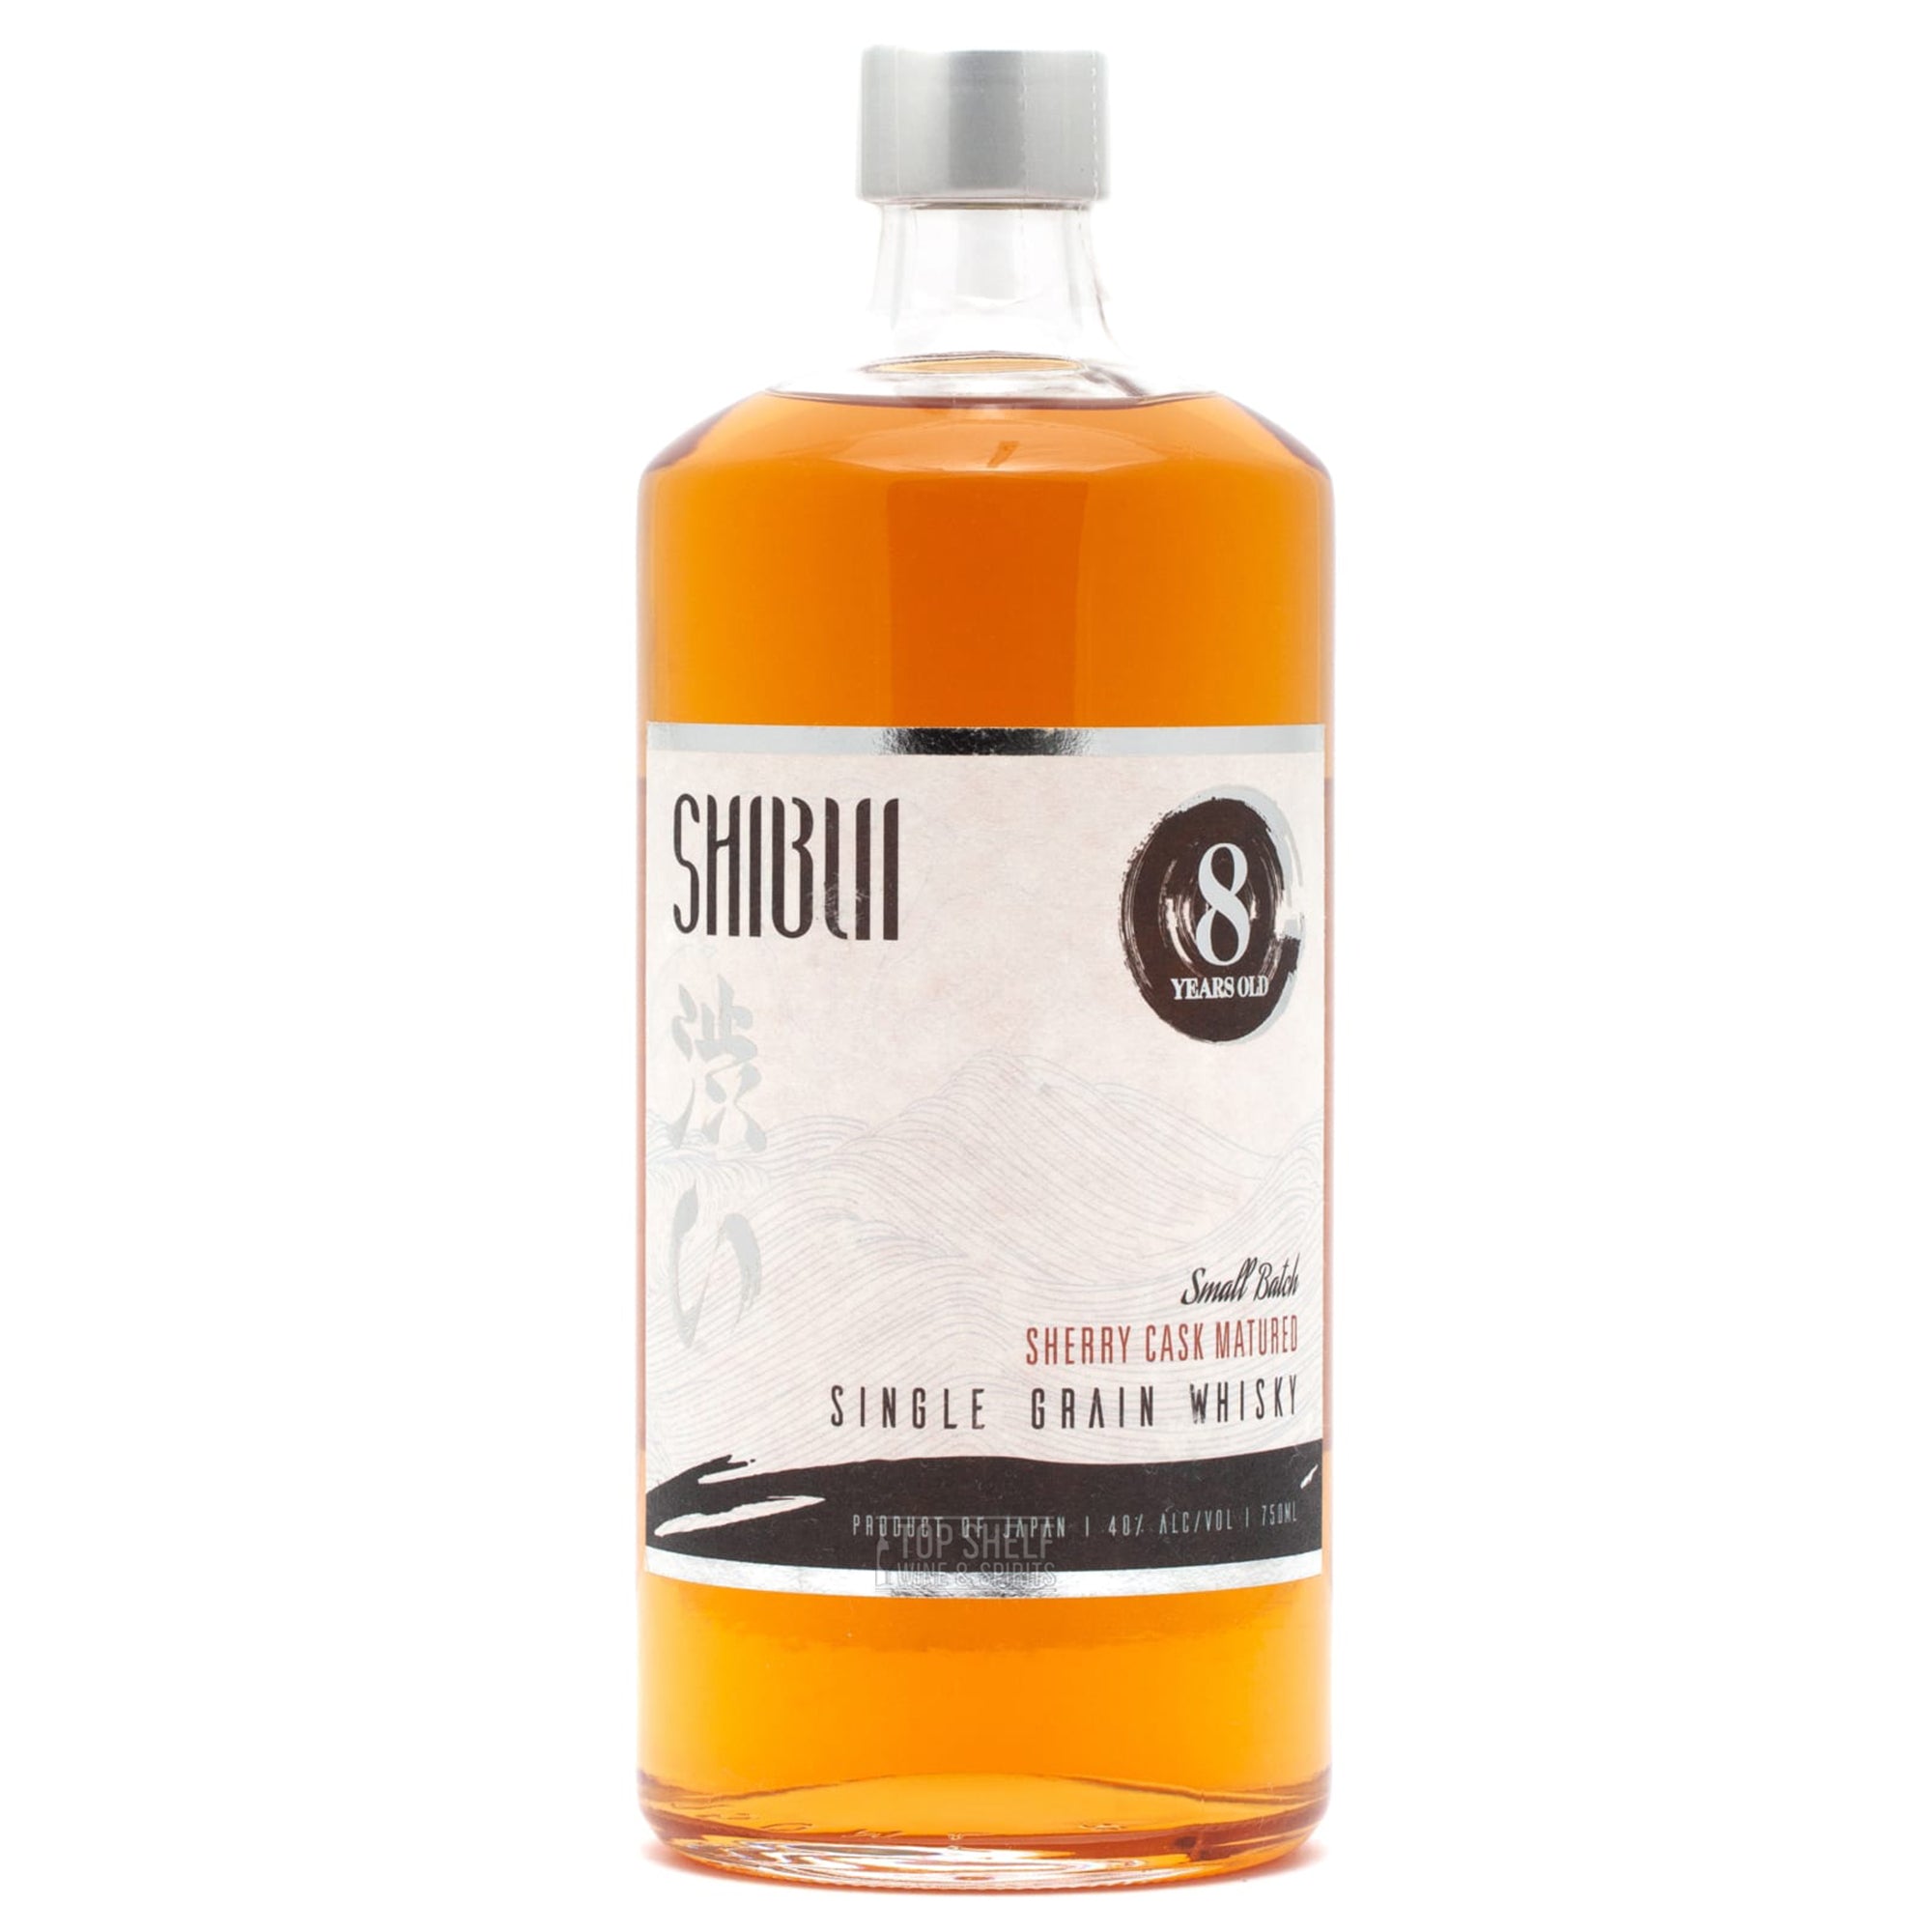 shibui 8 year sherry cask whisky